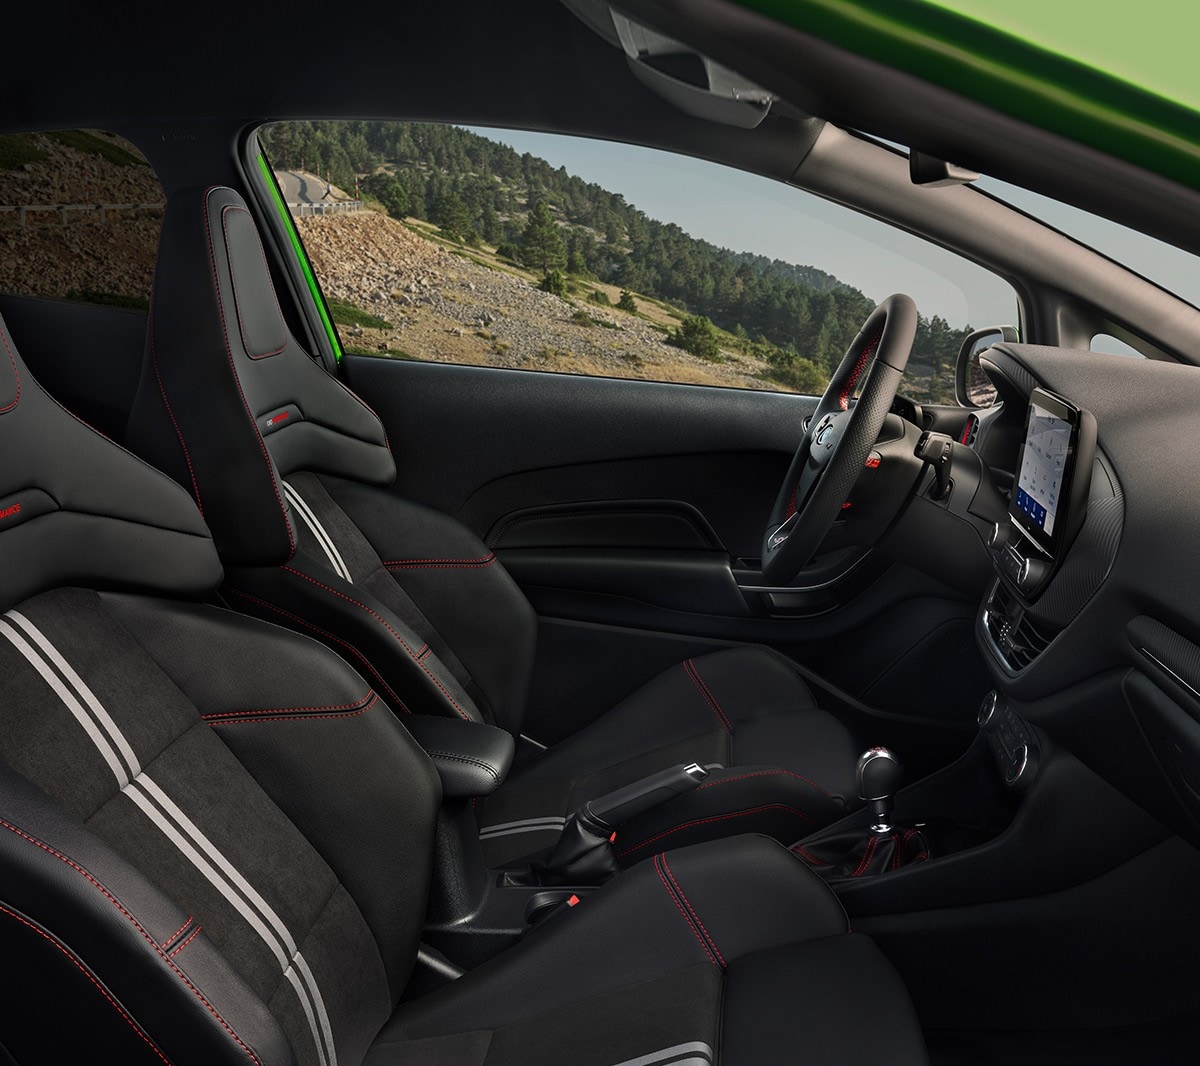 Ford Fiesta ST Innenraum. Blick auf die Ford Performance Sportsitze und Cockpit.